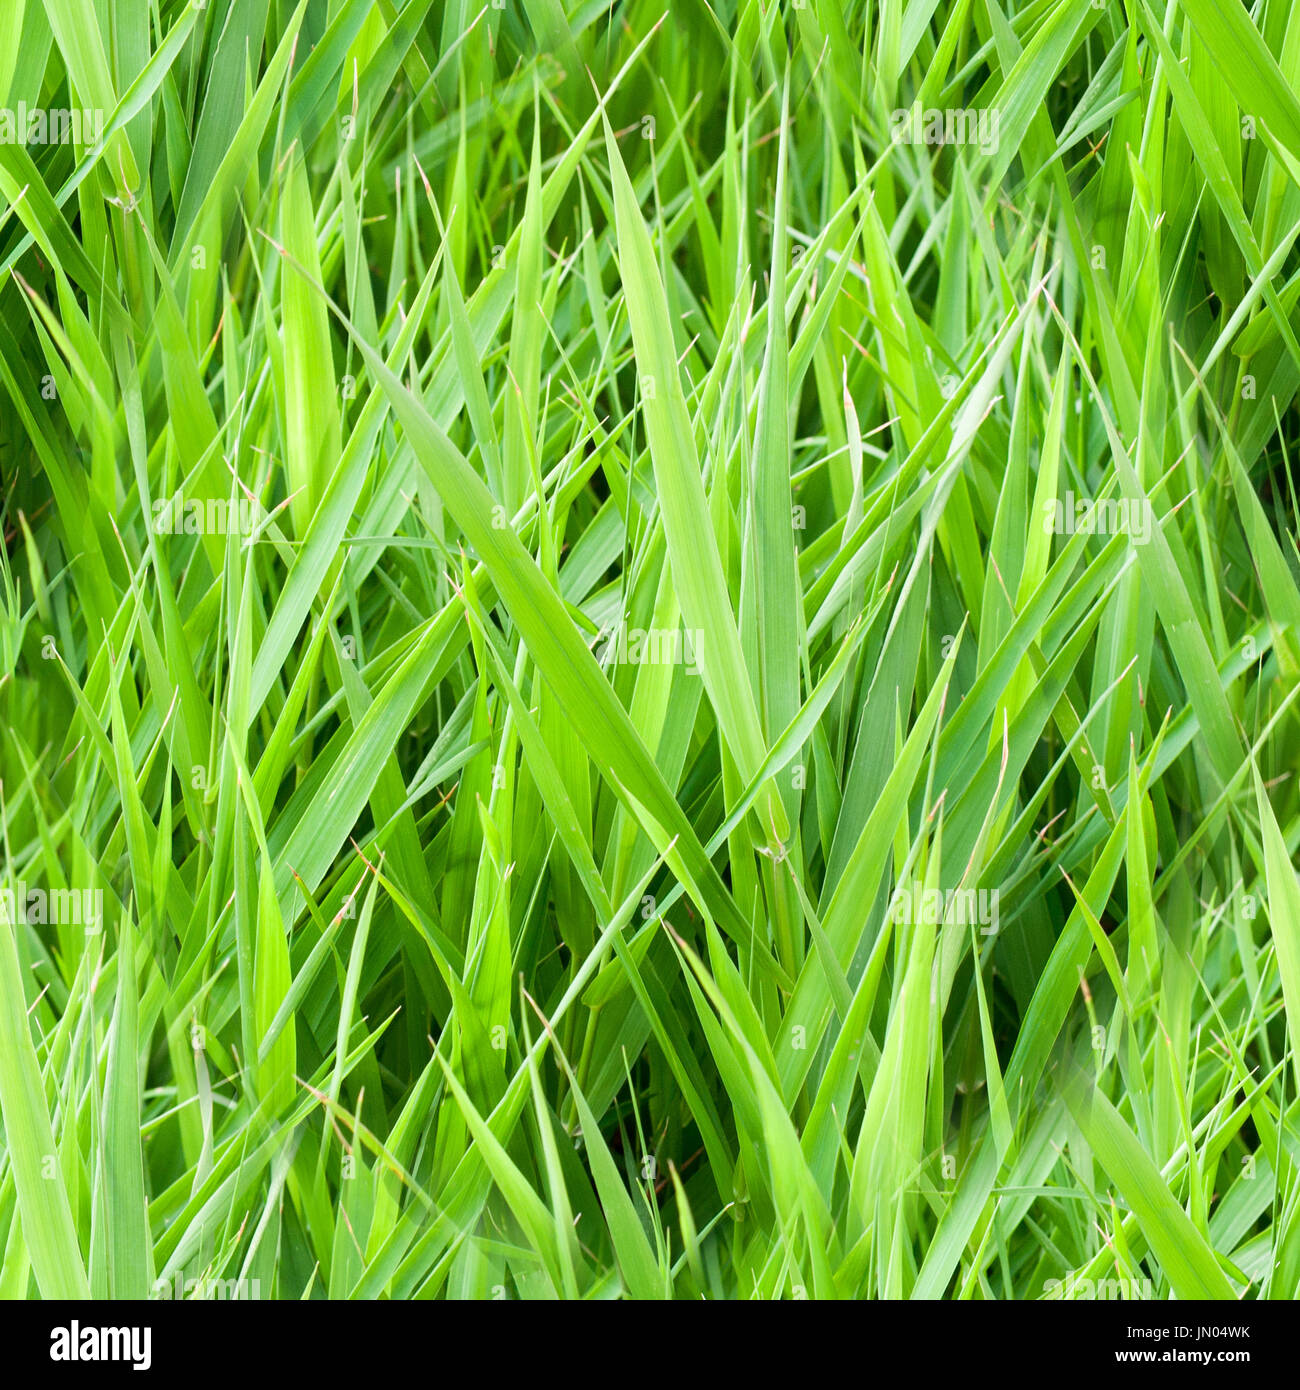 seamless summer garden green grass. background, texture. Stock Photo